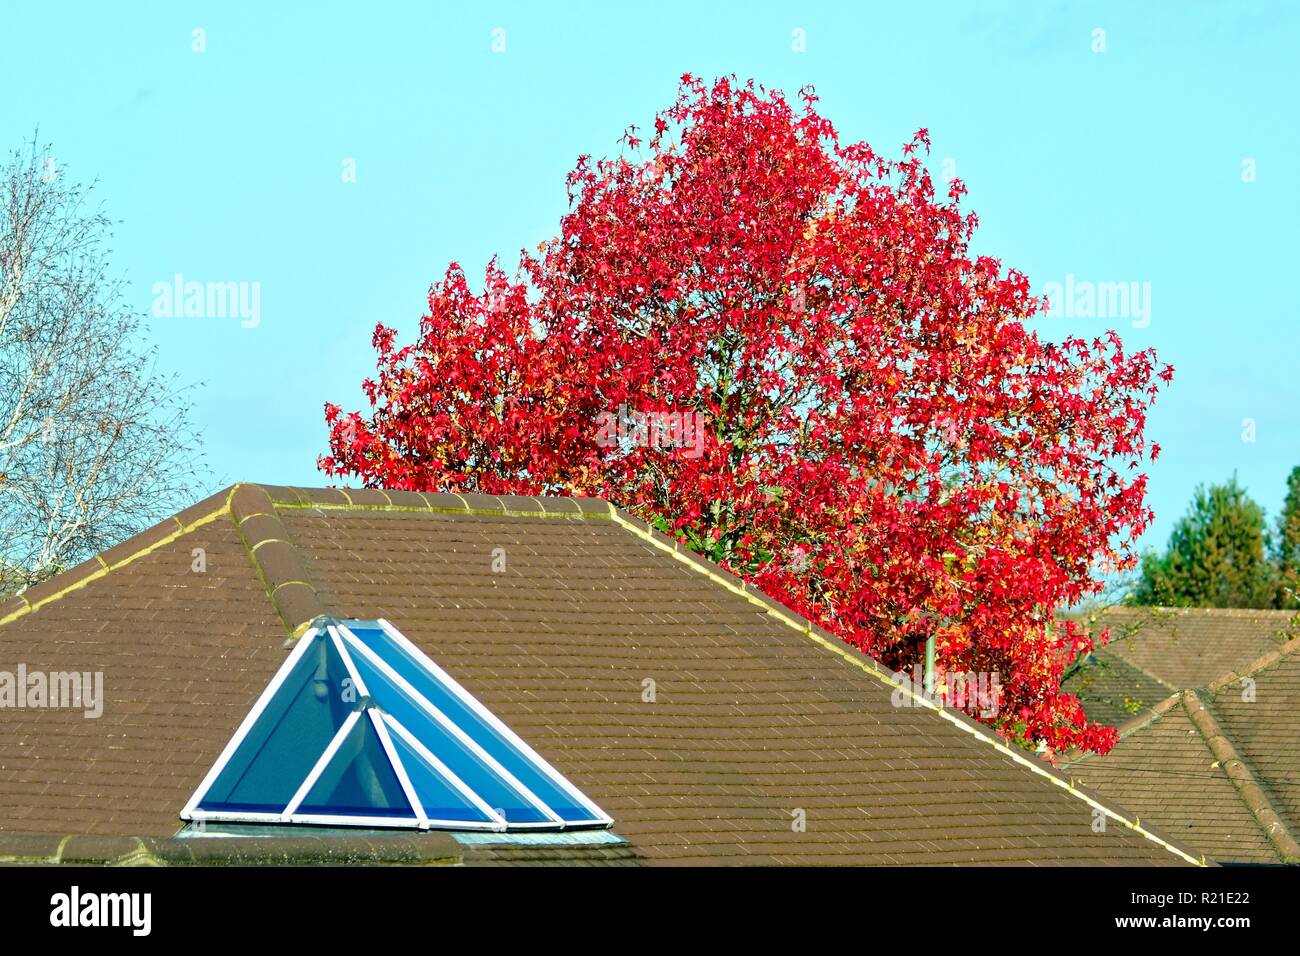 Liquidambar styraciflua ou arbre de gomme douce, dans le feuillage rouge d'automne au-dessus d'un toit de banlieue, Shepperton Surrey Angleterre Royaume-Uni Banque D'Images